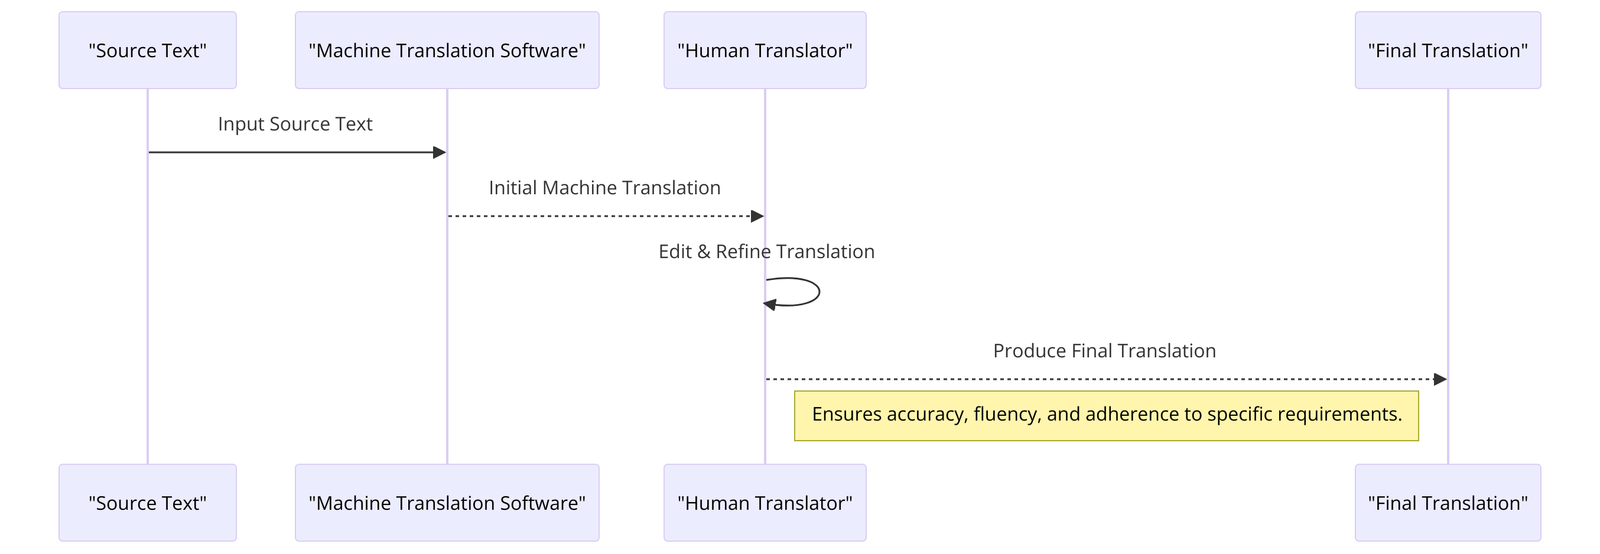 machine-translation-process